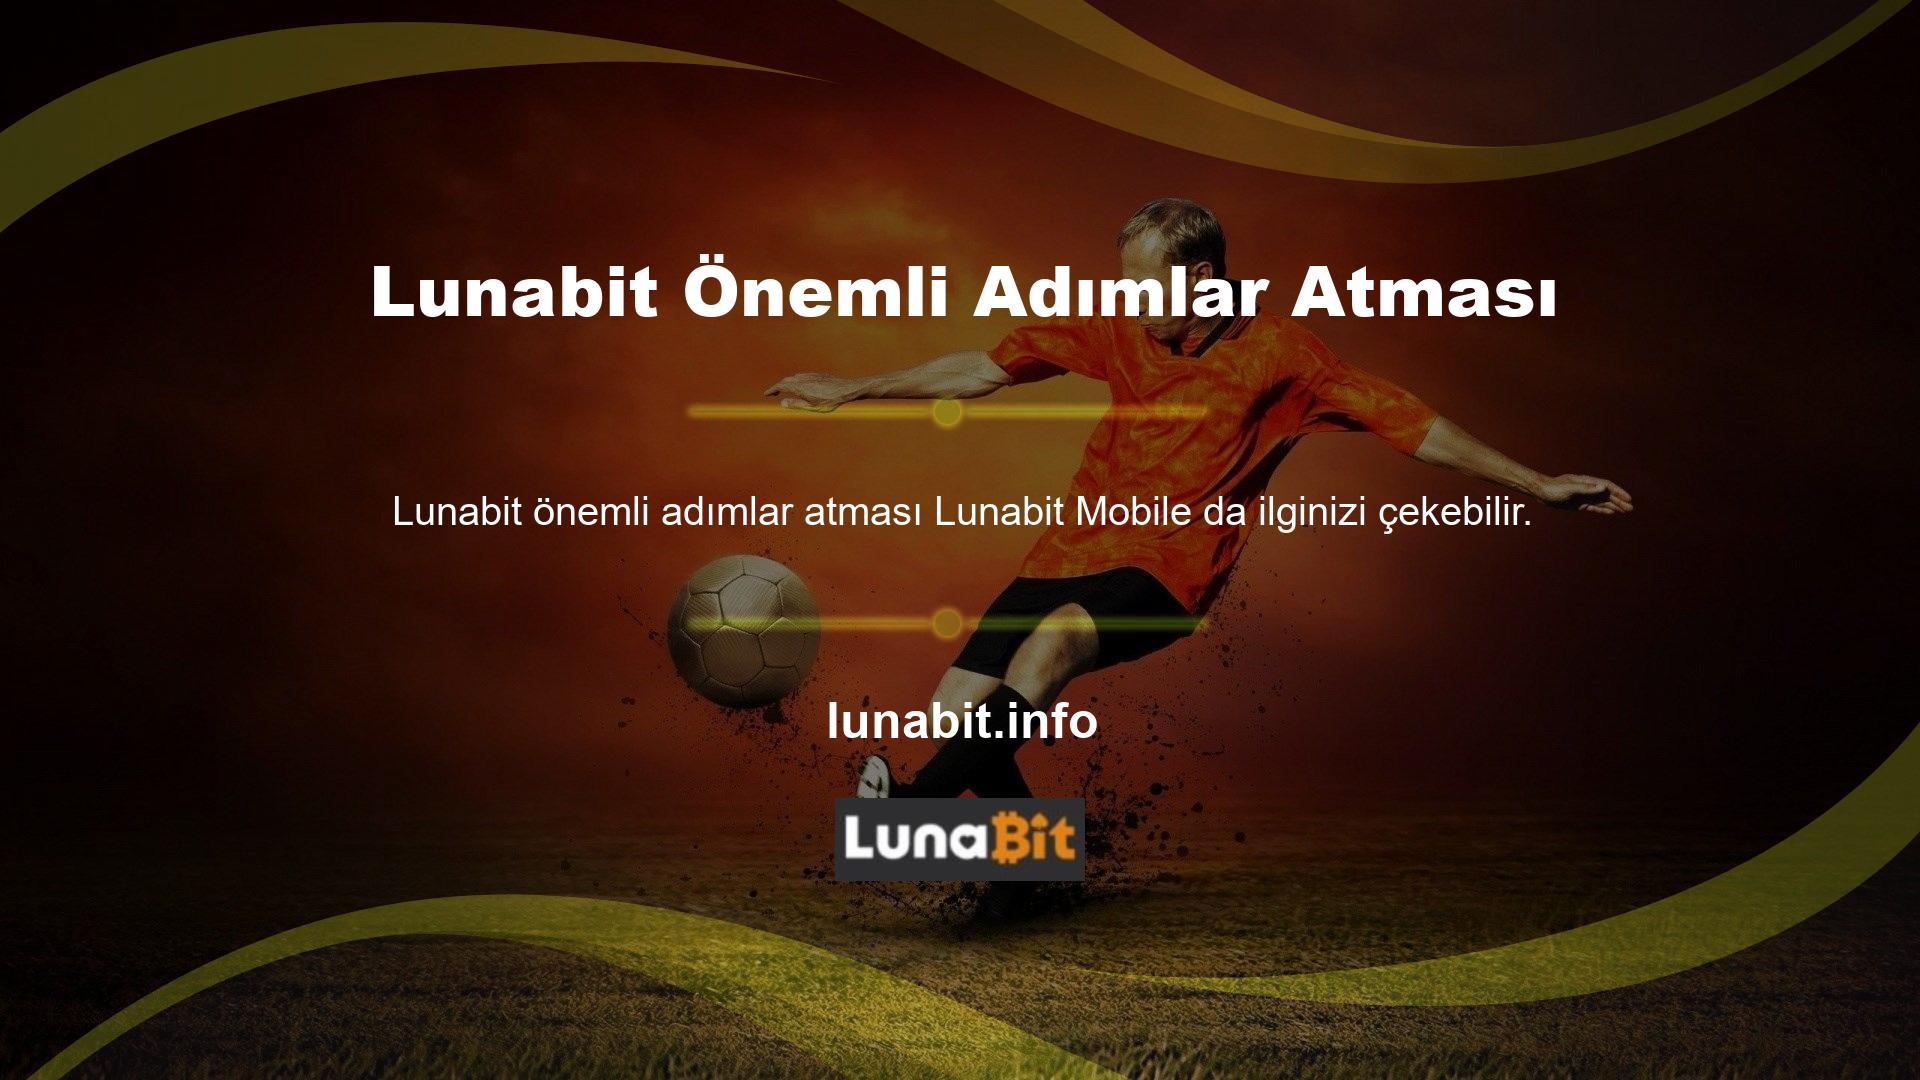 Mobil Lunabit Mobil Giriş, çok önemli bir çevrimiçi bahis okulunu pazara getiriyor ve aynı zamanda mobil bahis sitesi olarak da işlev görüyor